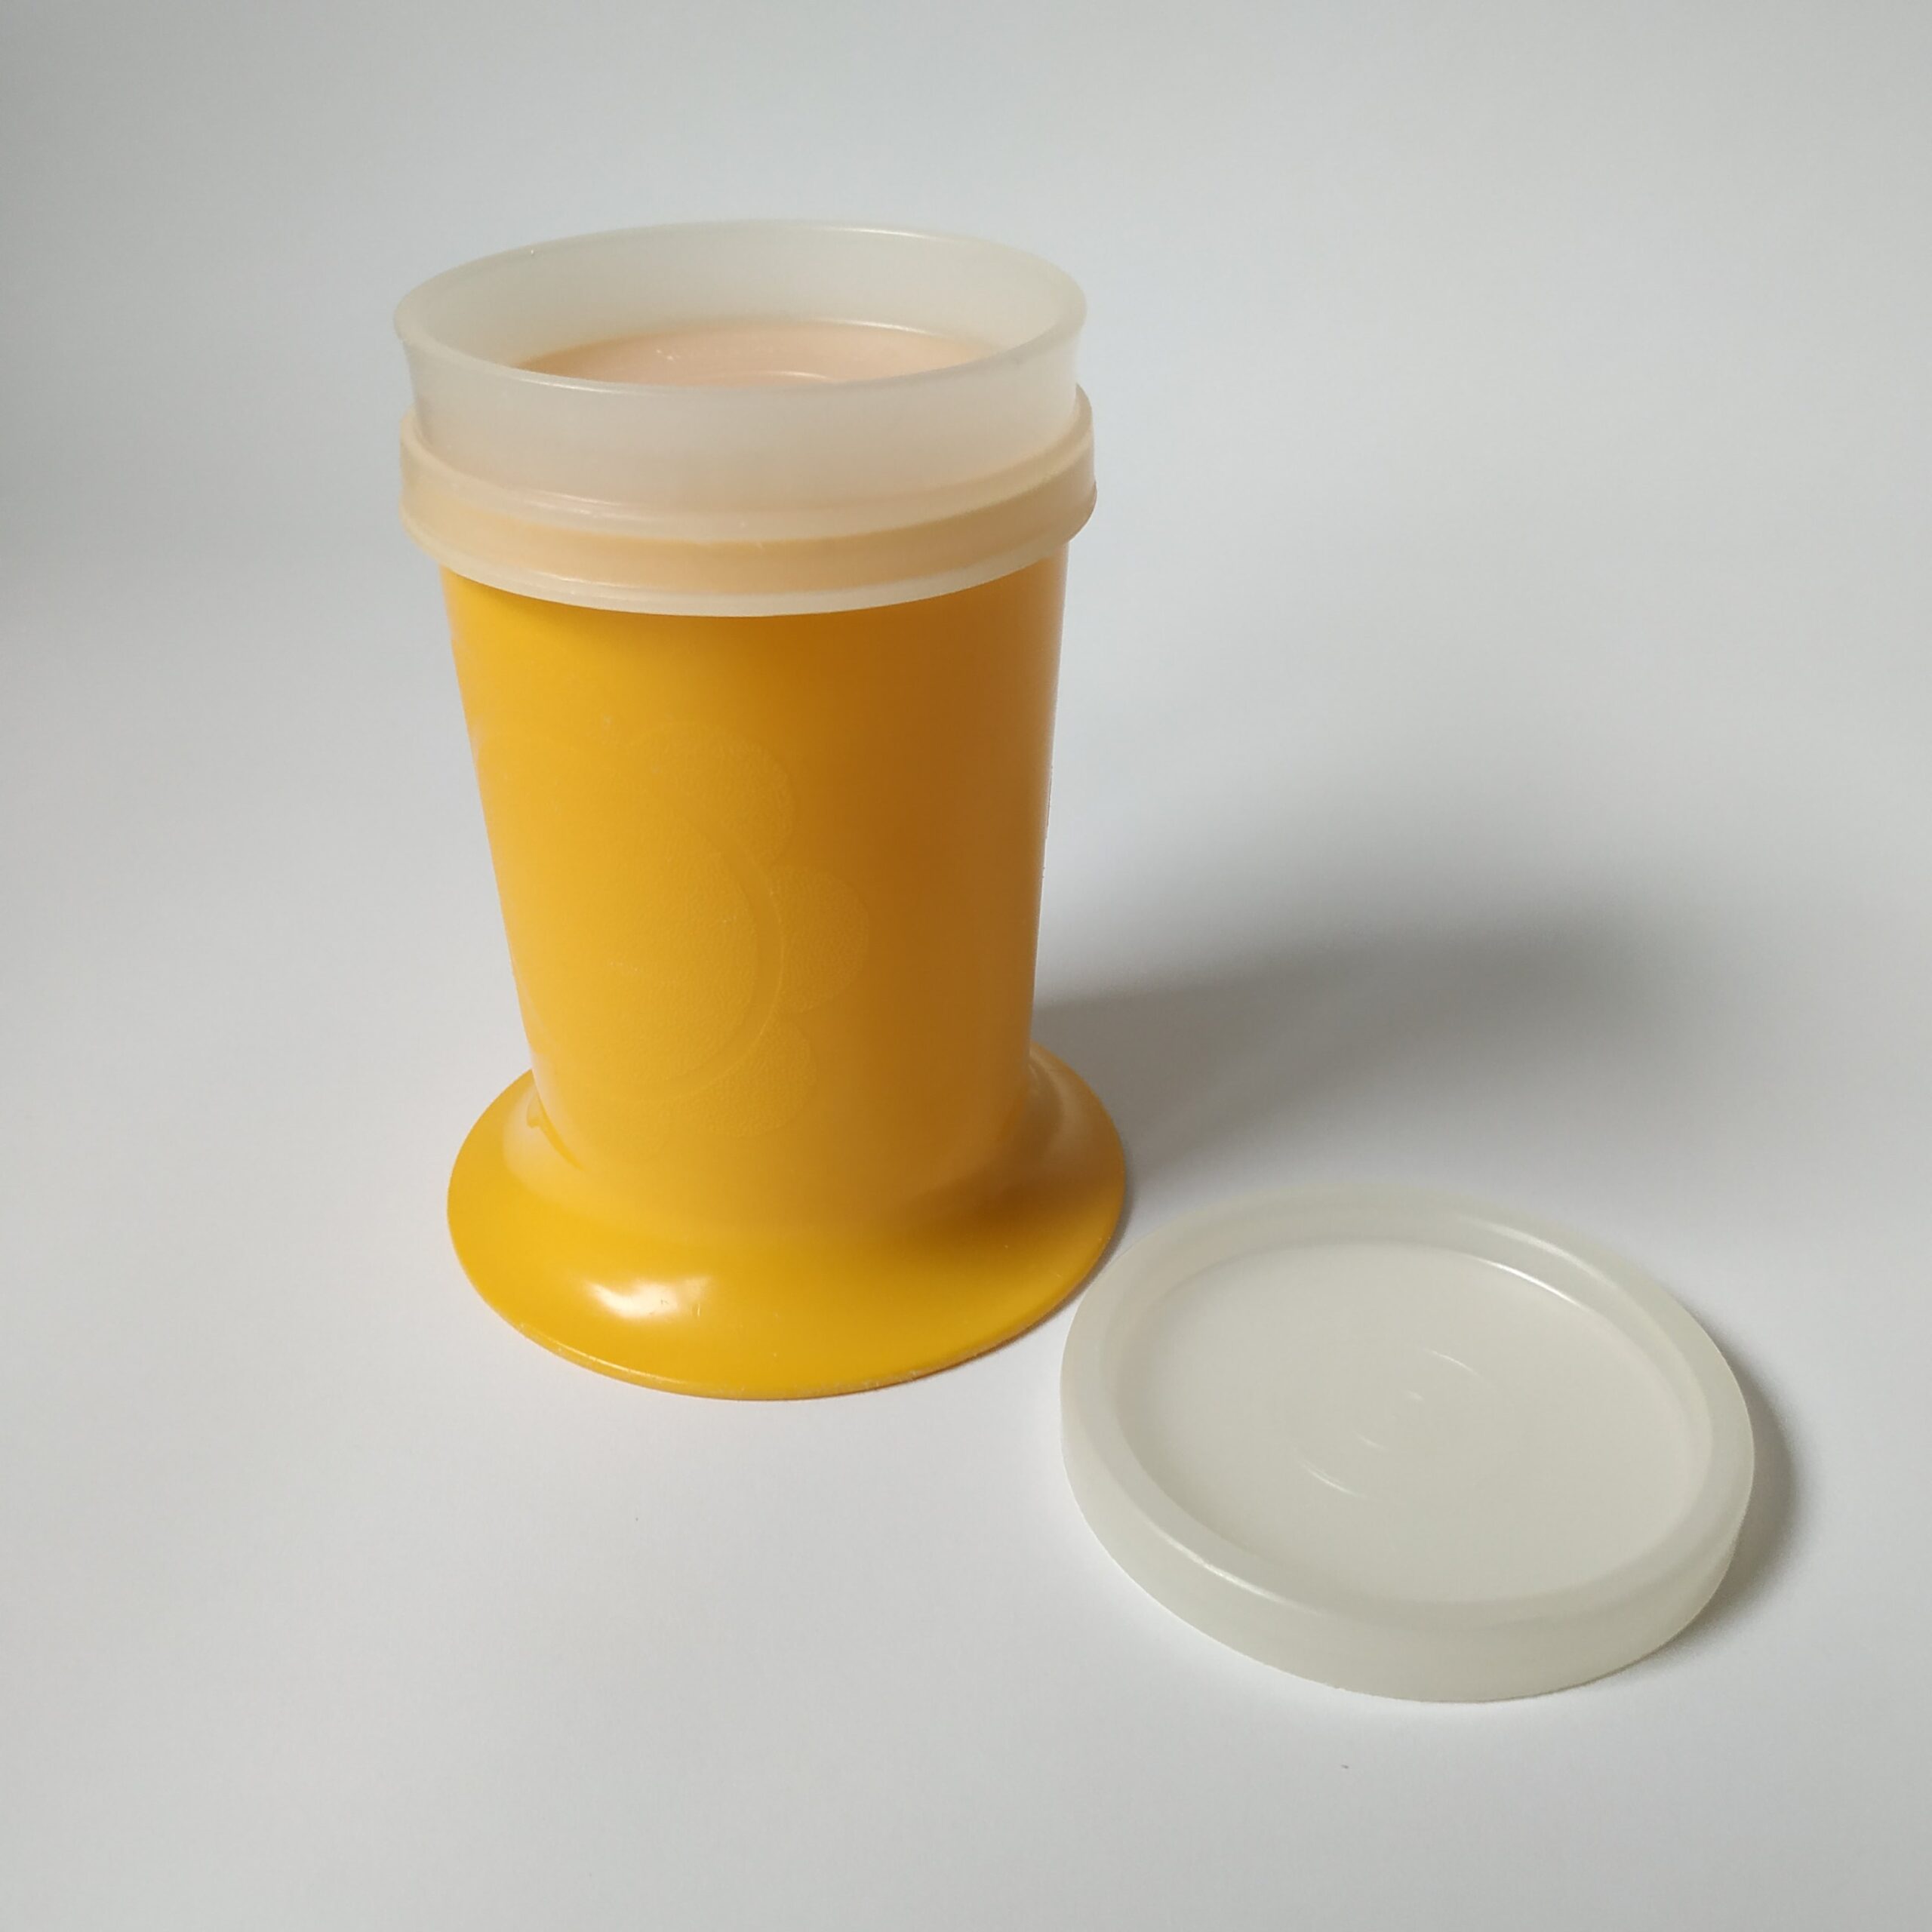 Kinderbeker Tupperware in de kleur geel – afsluitbaar – hoogte 11,5 cm (2)